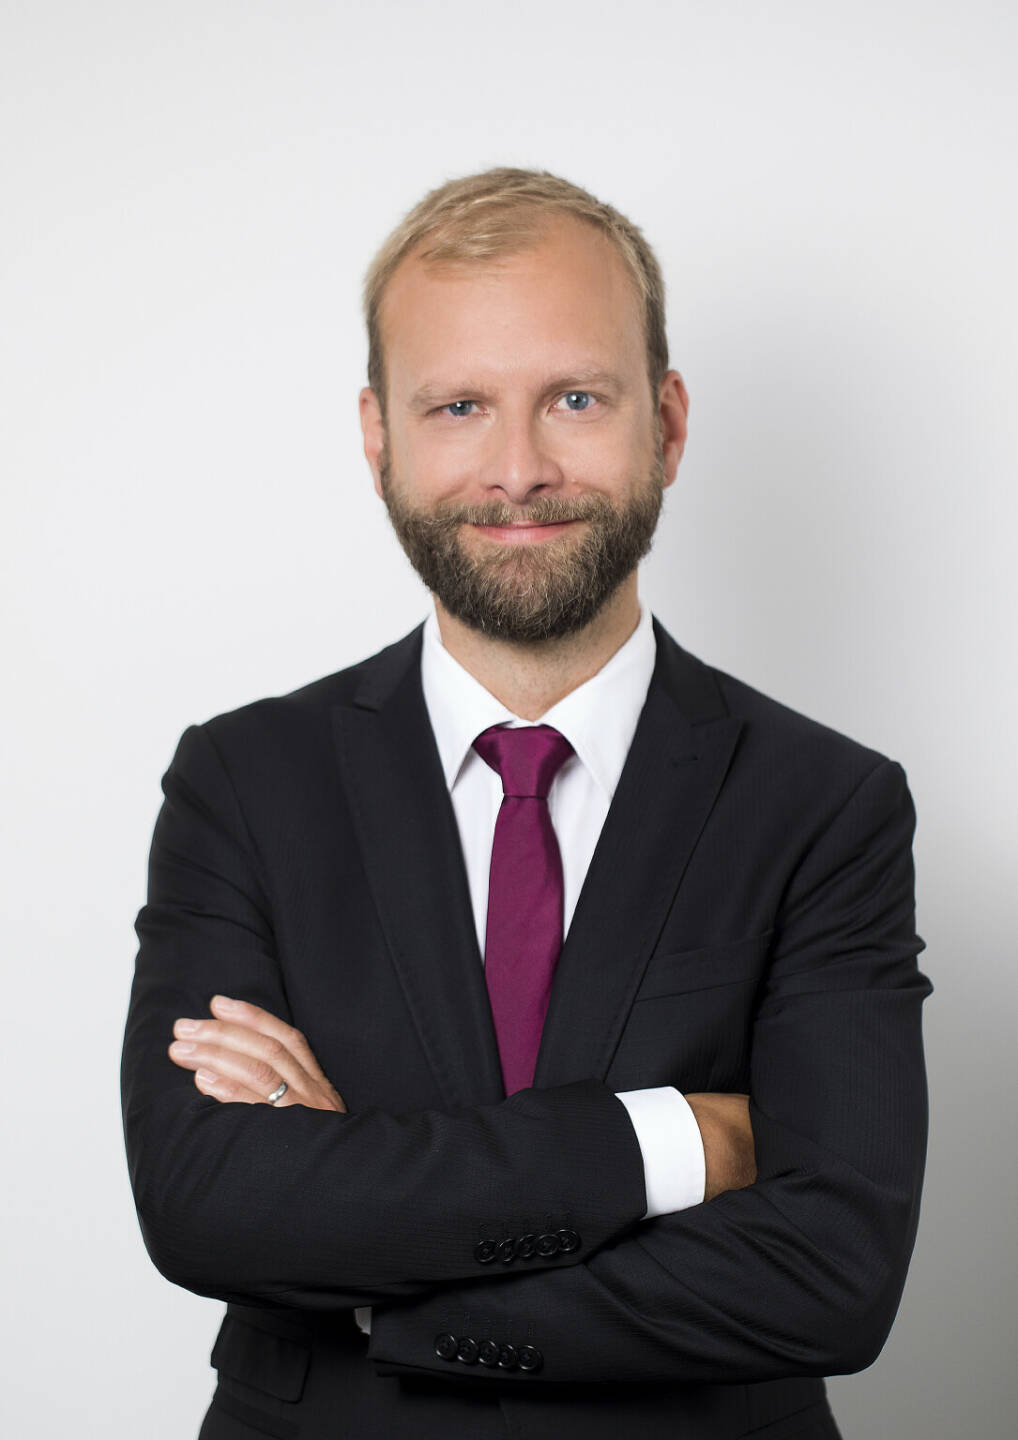 Christoph Riegler ist mit Jahresbeginn Partner im Tax-Bereich bei Deloitte Österreich. Credit: Deloitte/feelimage